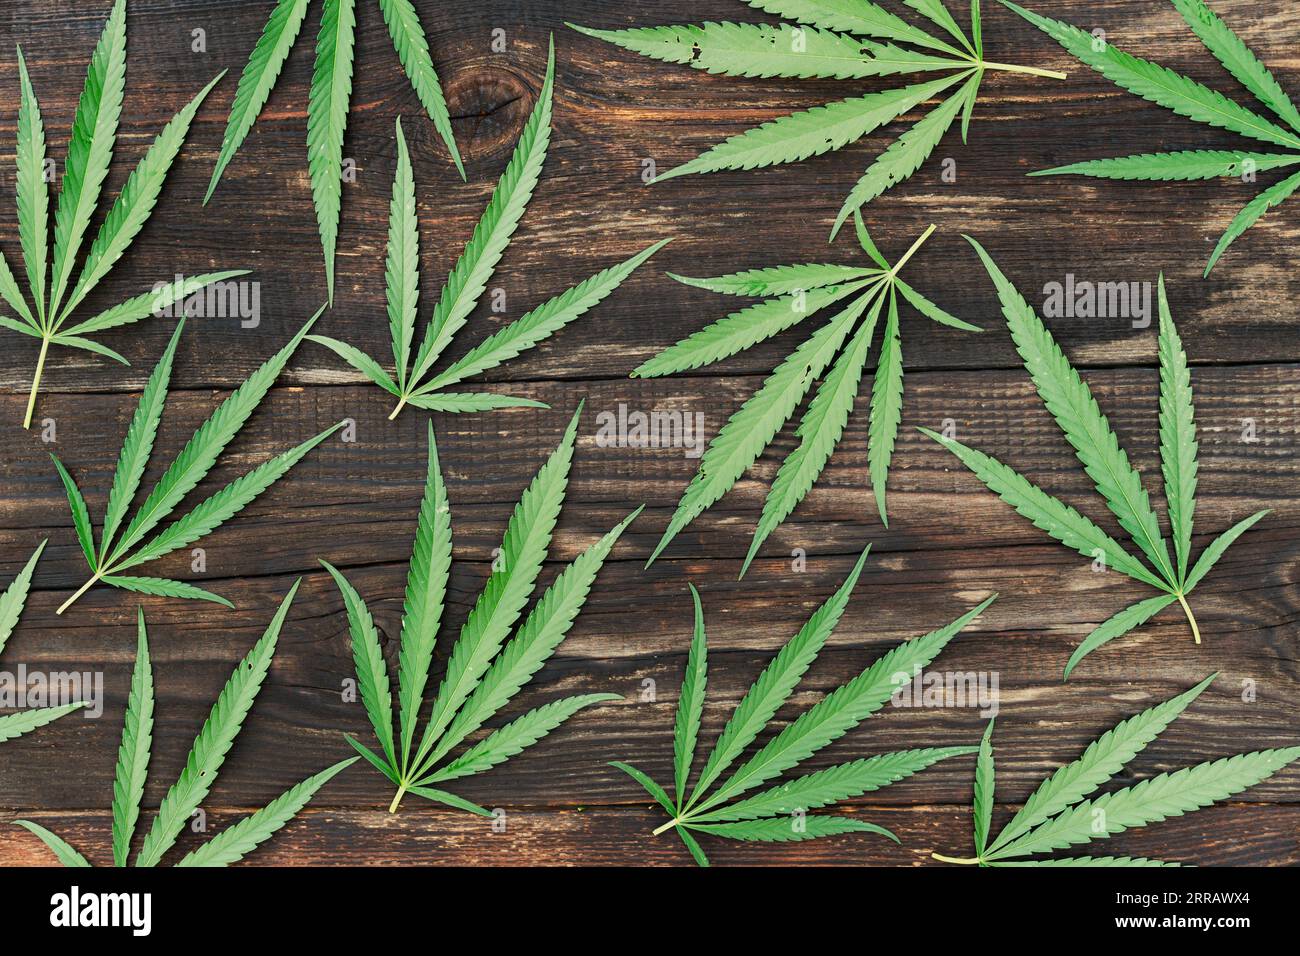 Cannabisblatt auf hölzernem Hintergrund. Cannabis Texture Marihuana Blatt Hintergrund. Getrocknete Blatttropfen zur Herstellung von leichten Medikamenten Stockfoto